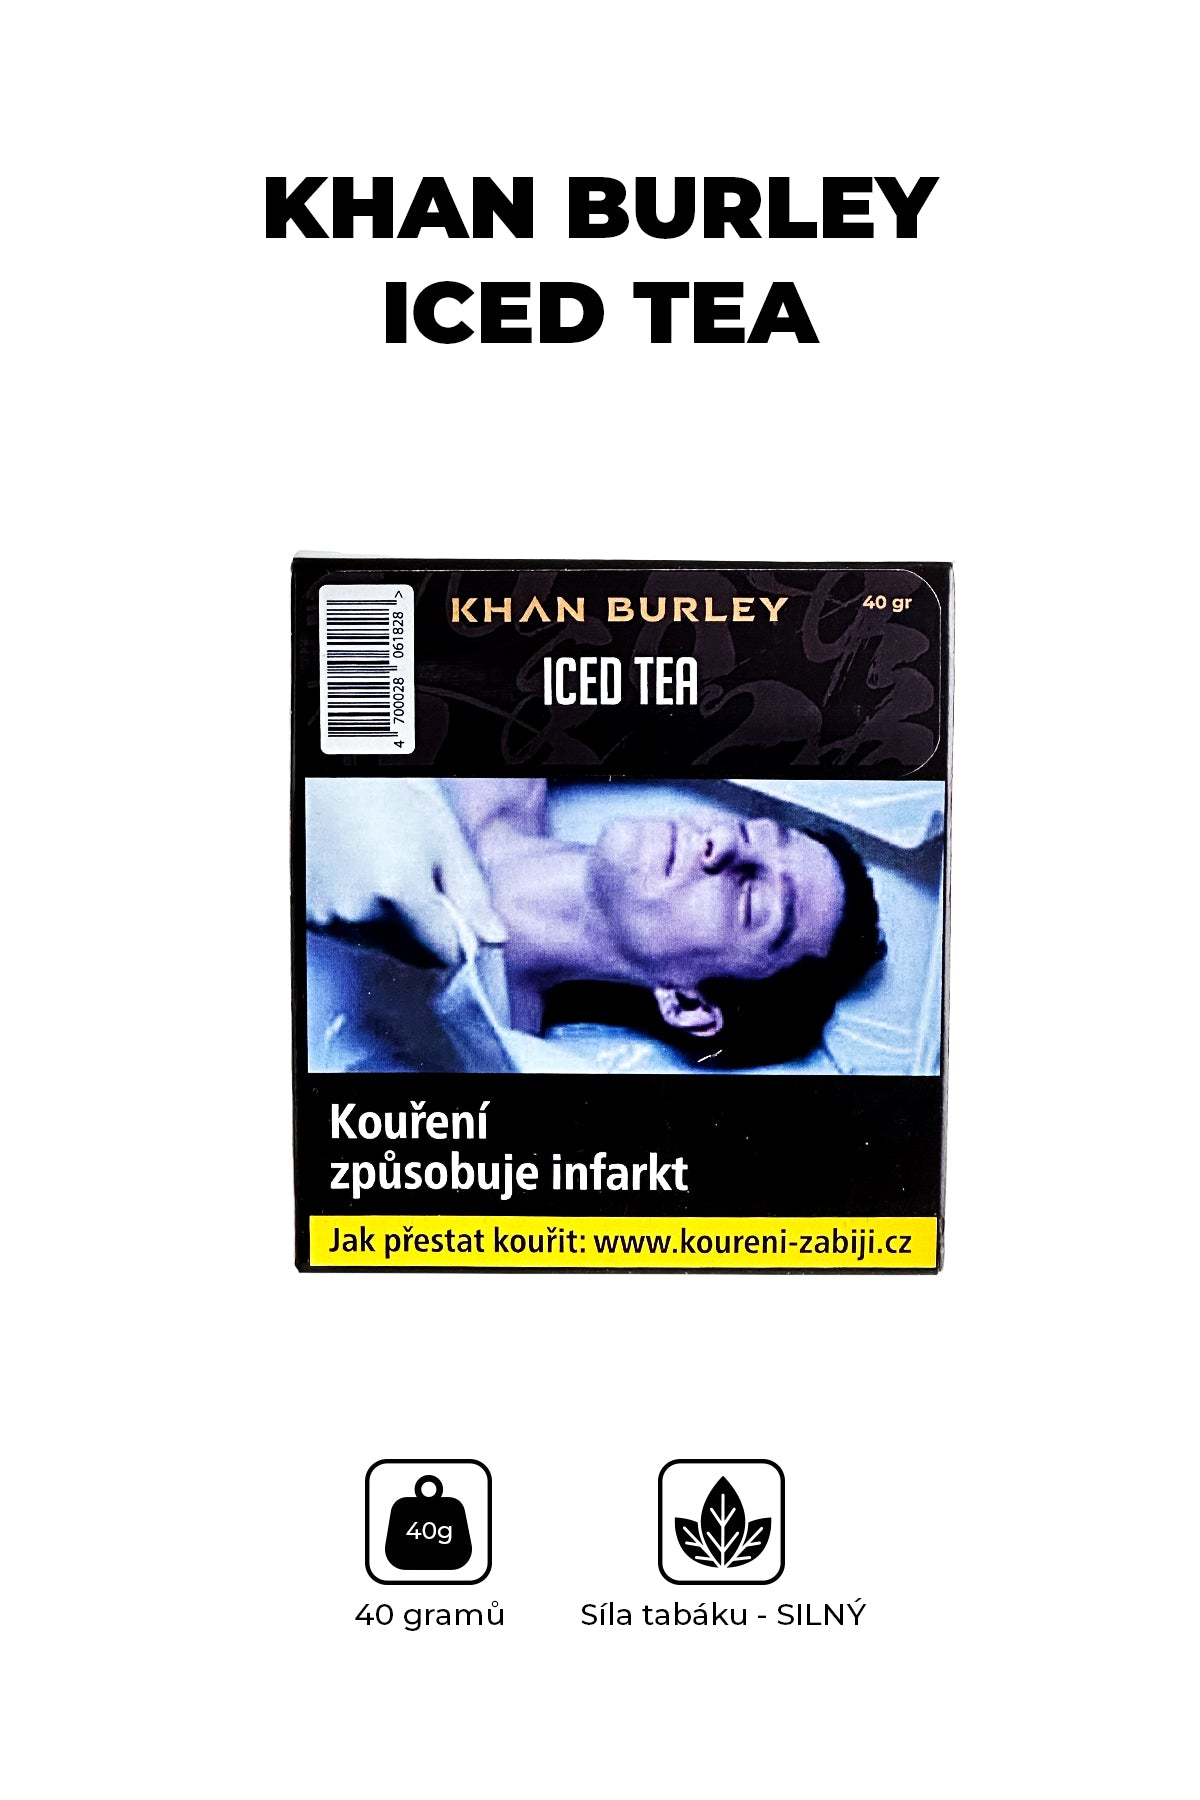 Tabák - Khan Burley 40g - Iced Tea